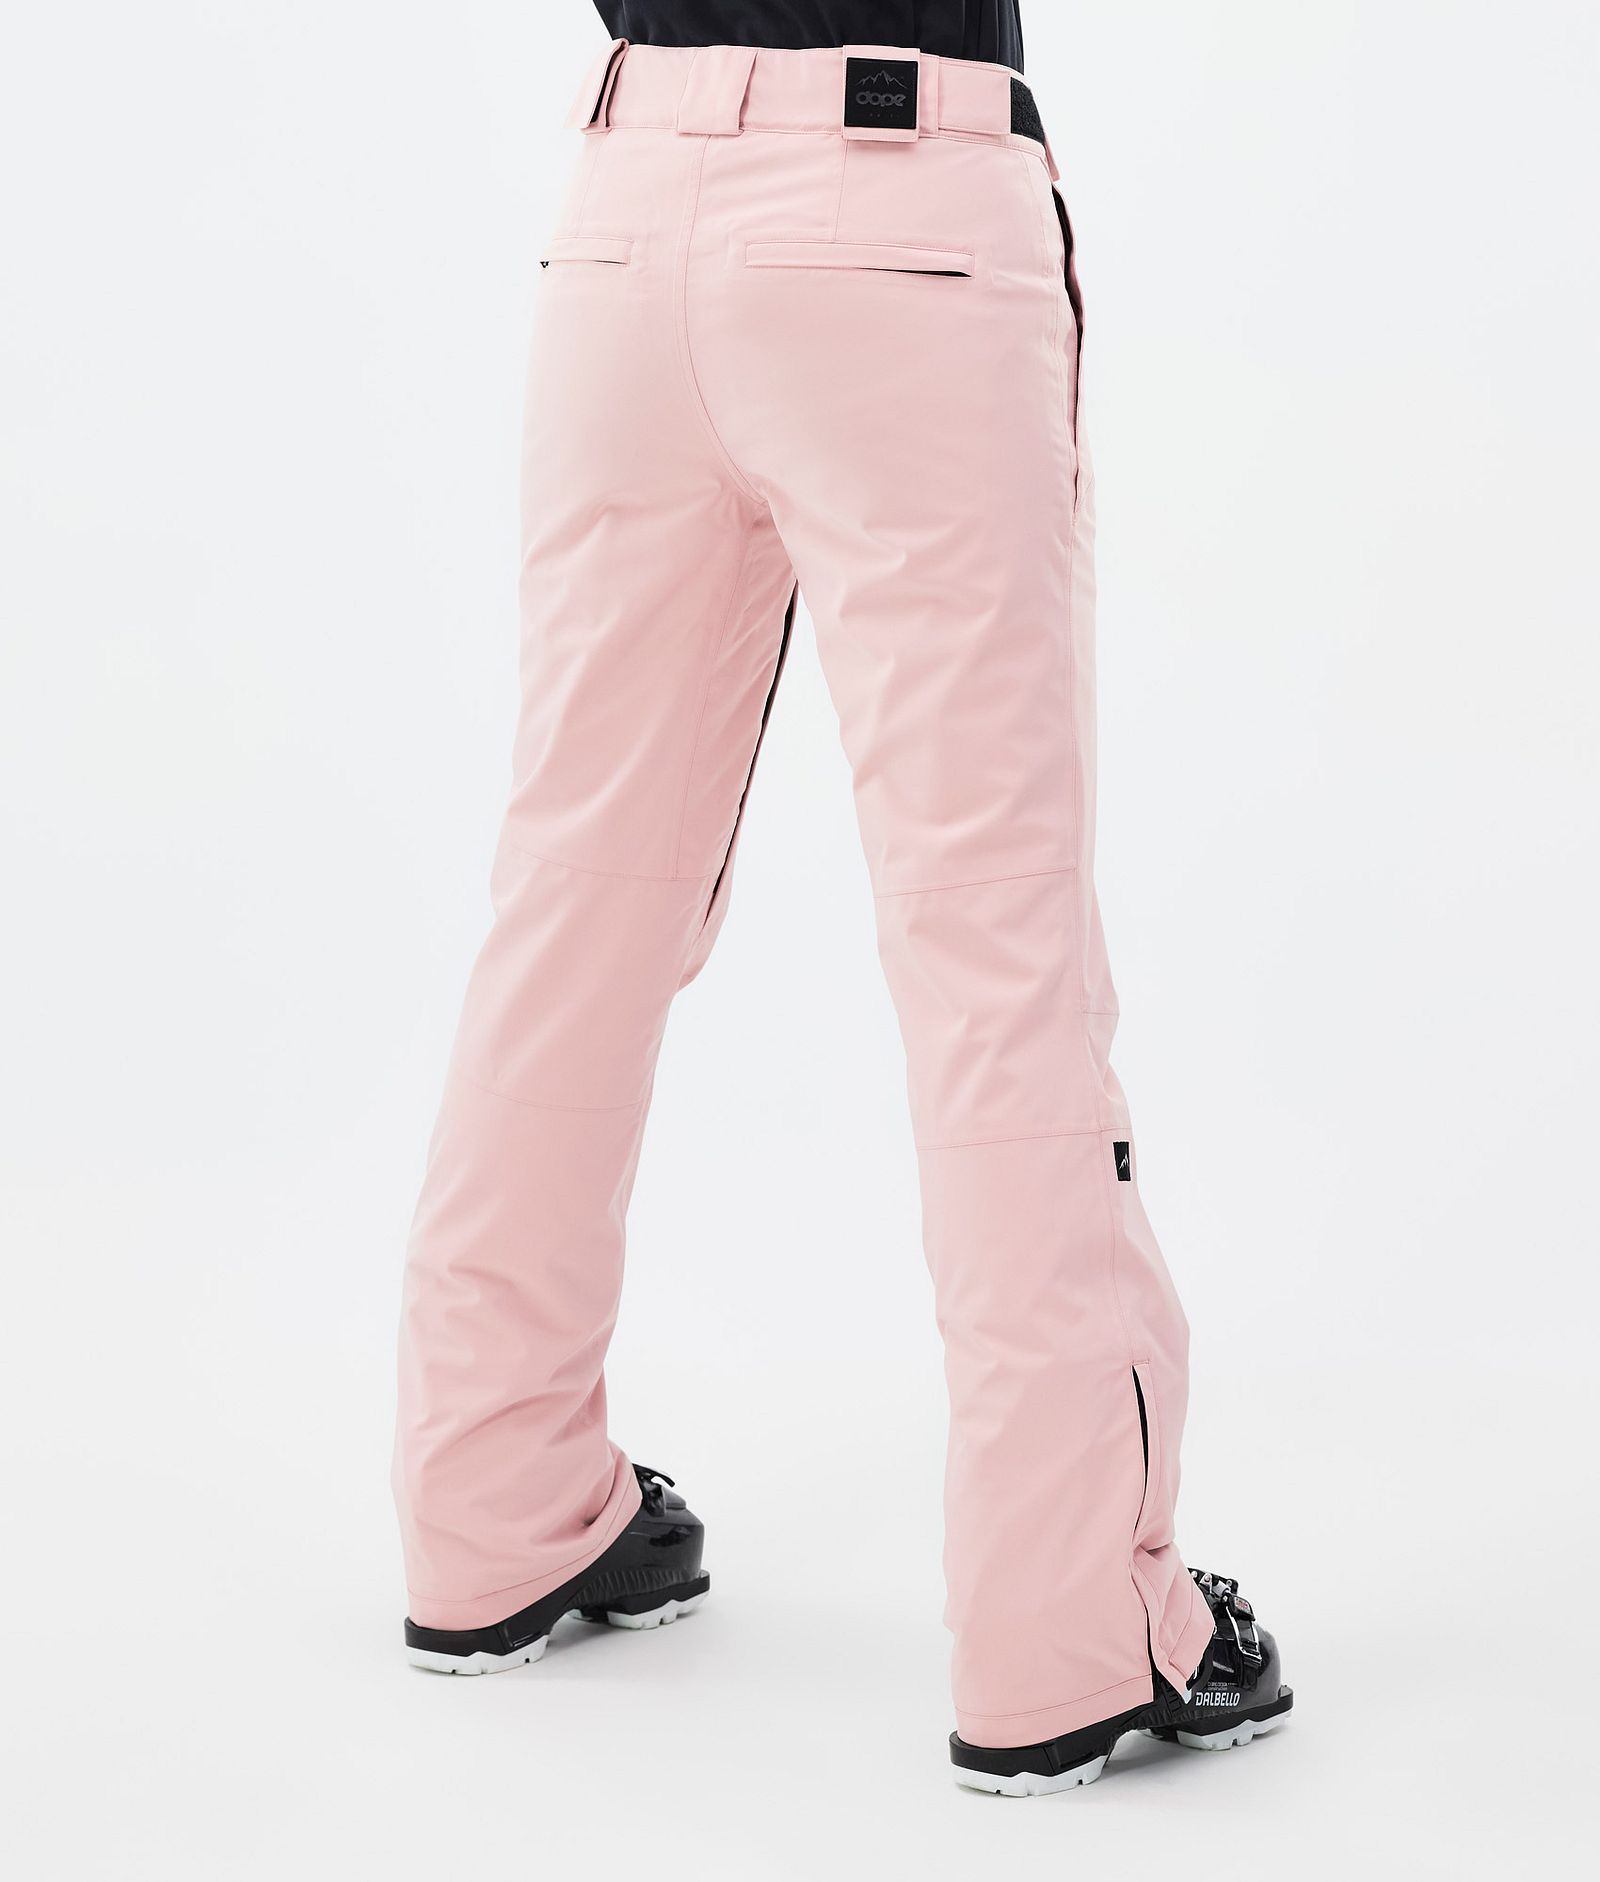 Dope Con W Spodnie Narciarskie Kobiety Soft Pink, Zdjęcie 4 z 6